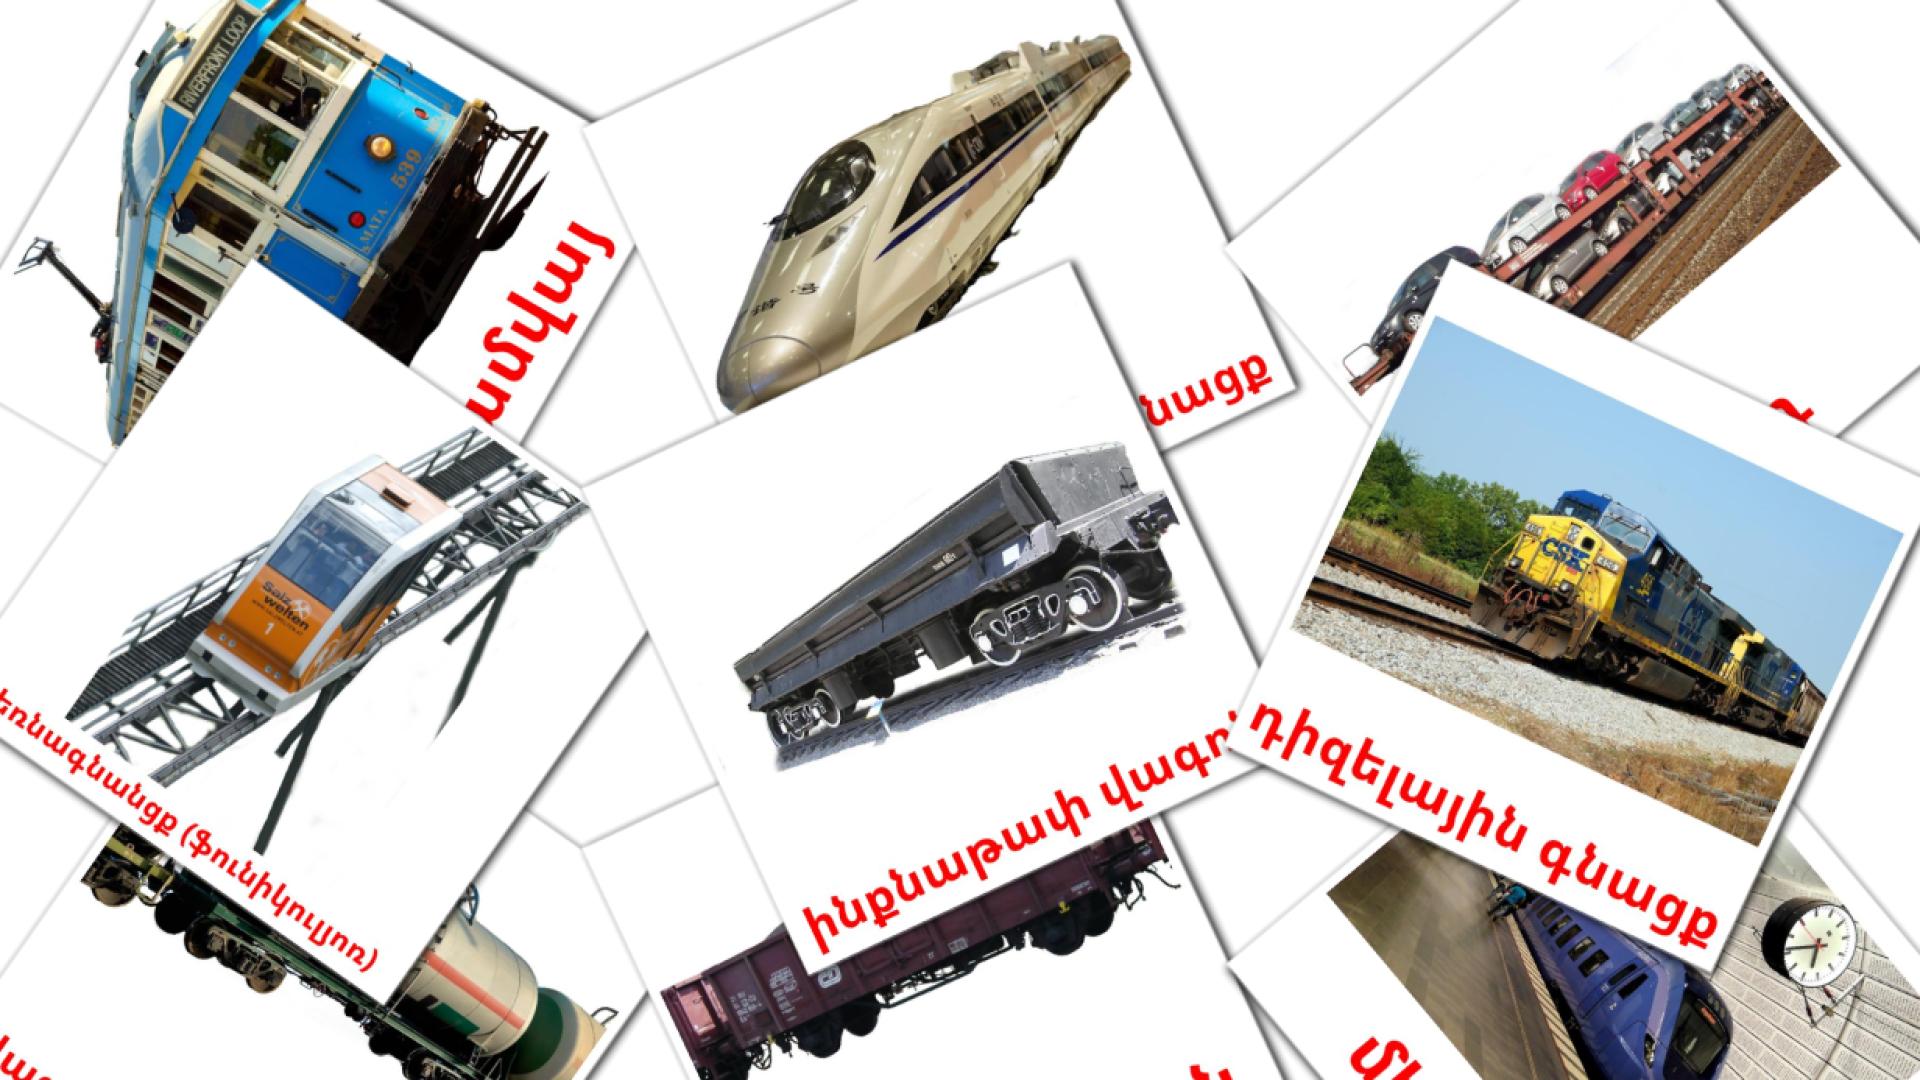 Schienenfahrzeug - Armenisch Vokabelkarten